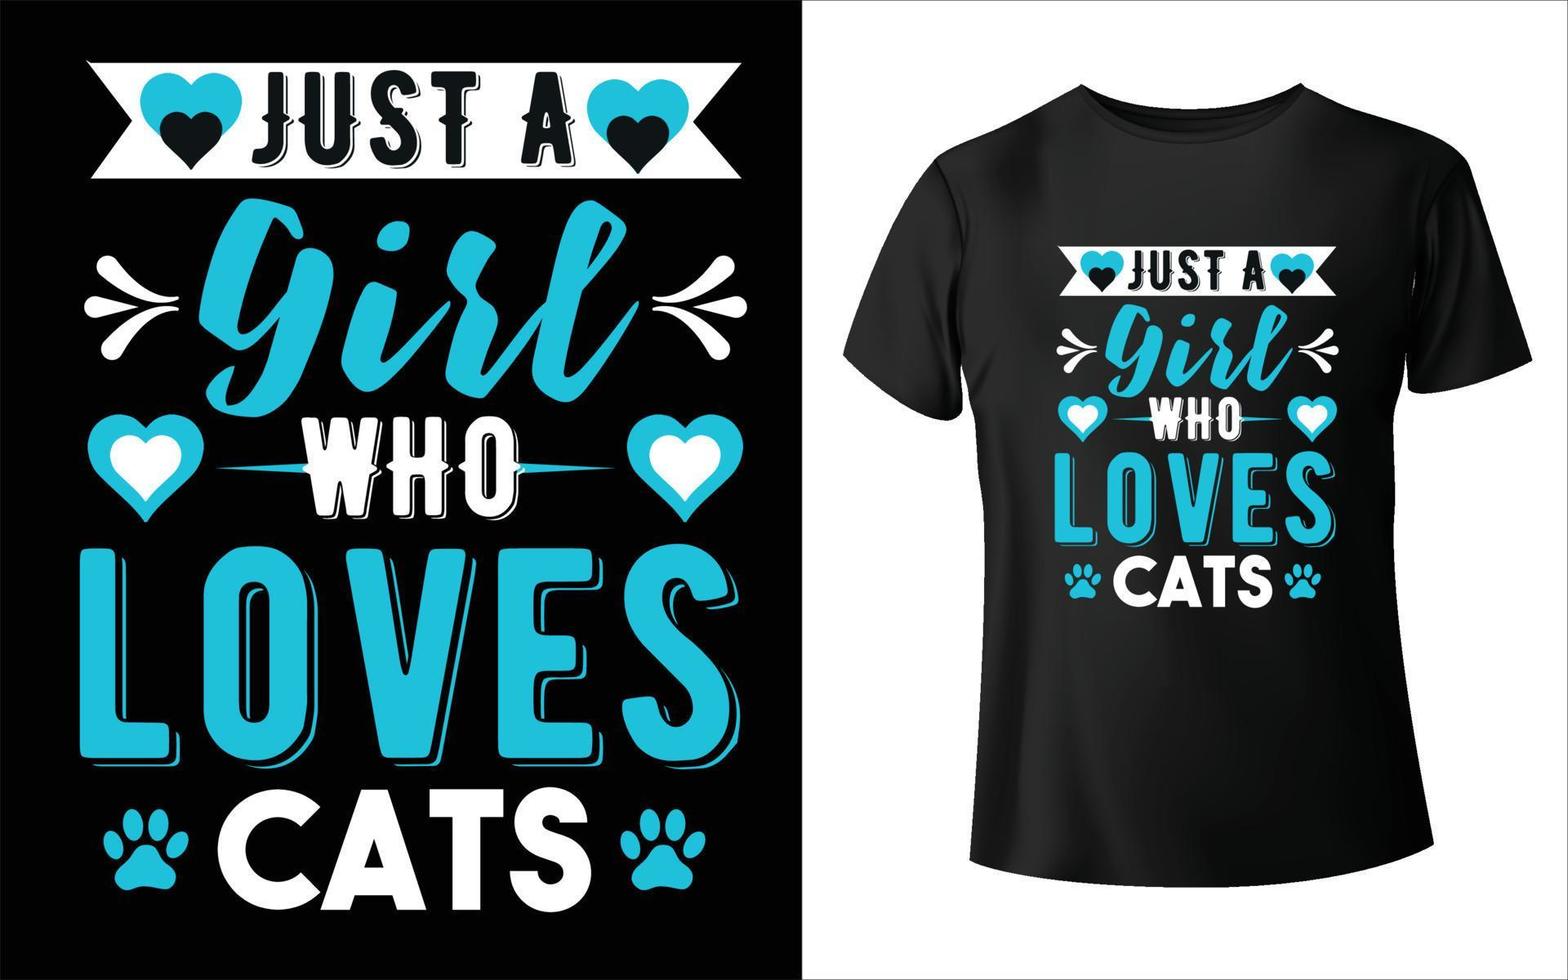 solo una chica que ama el vector de animales de camiseta de gato